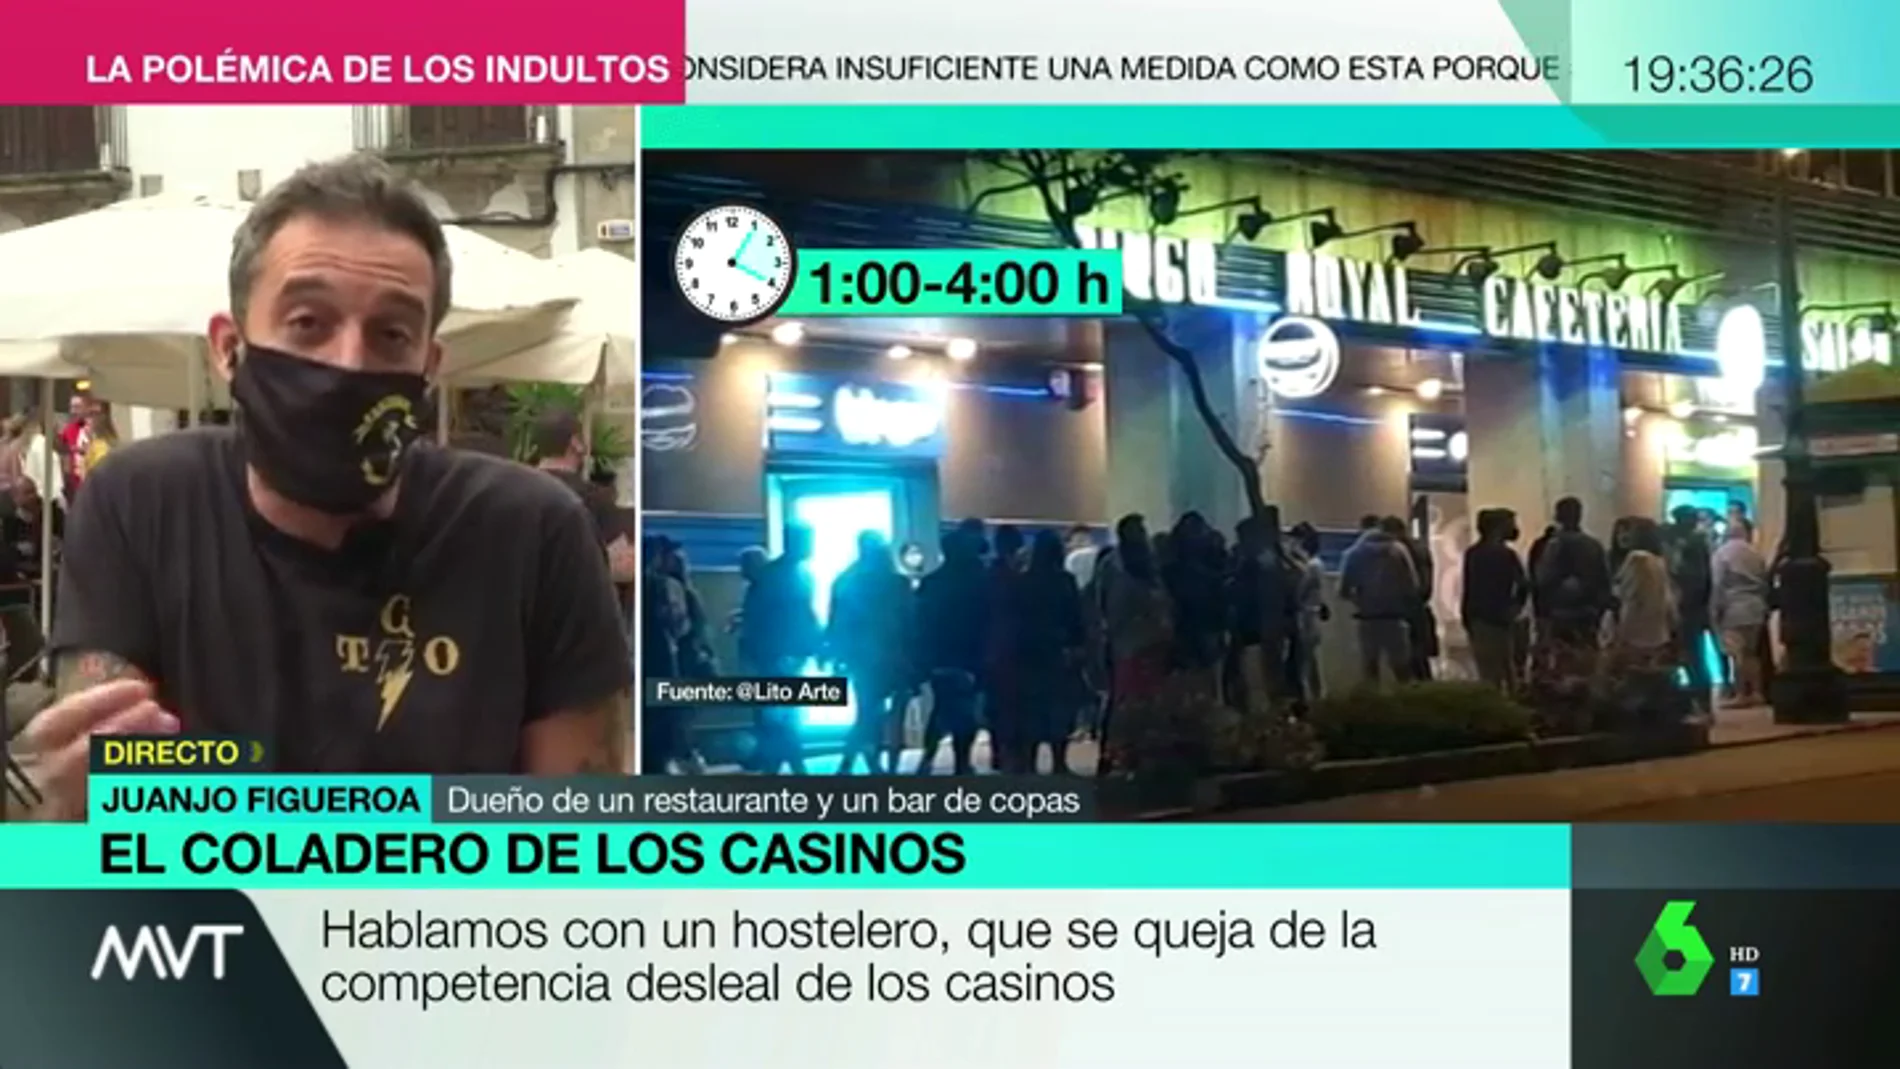 Hosteleros critican el agravio comparativo con los casinos: "Nos obligan a cerrar a la 1, y los jóvenes se van a apostar"